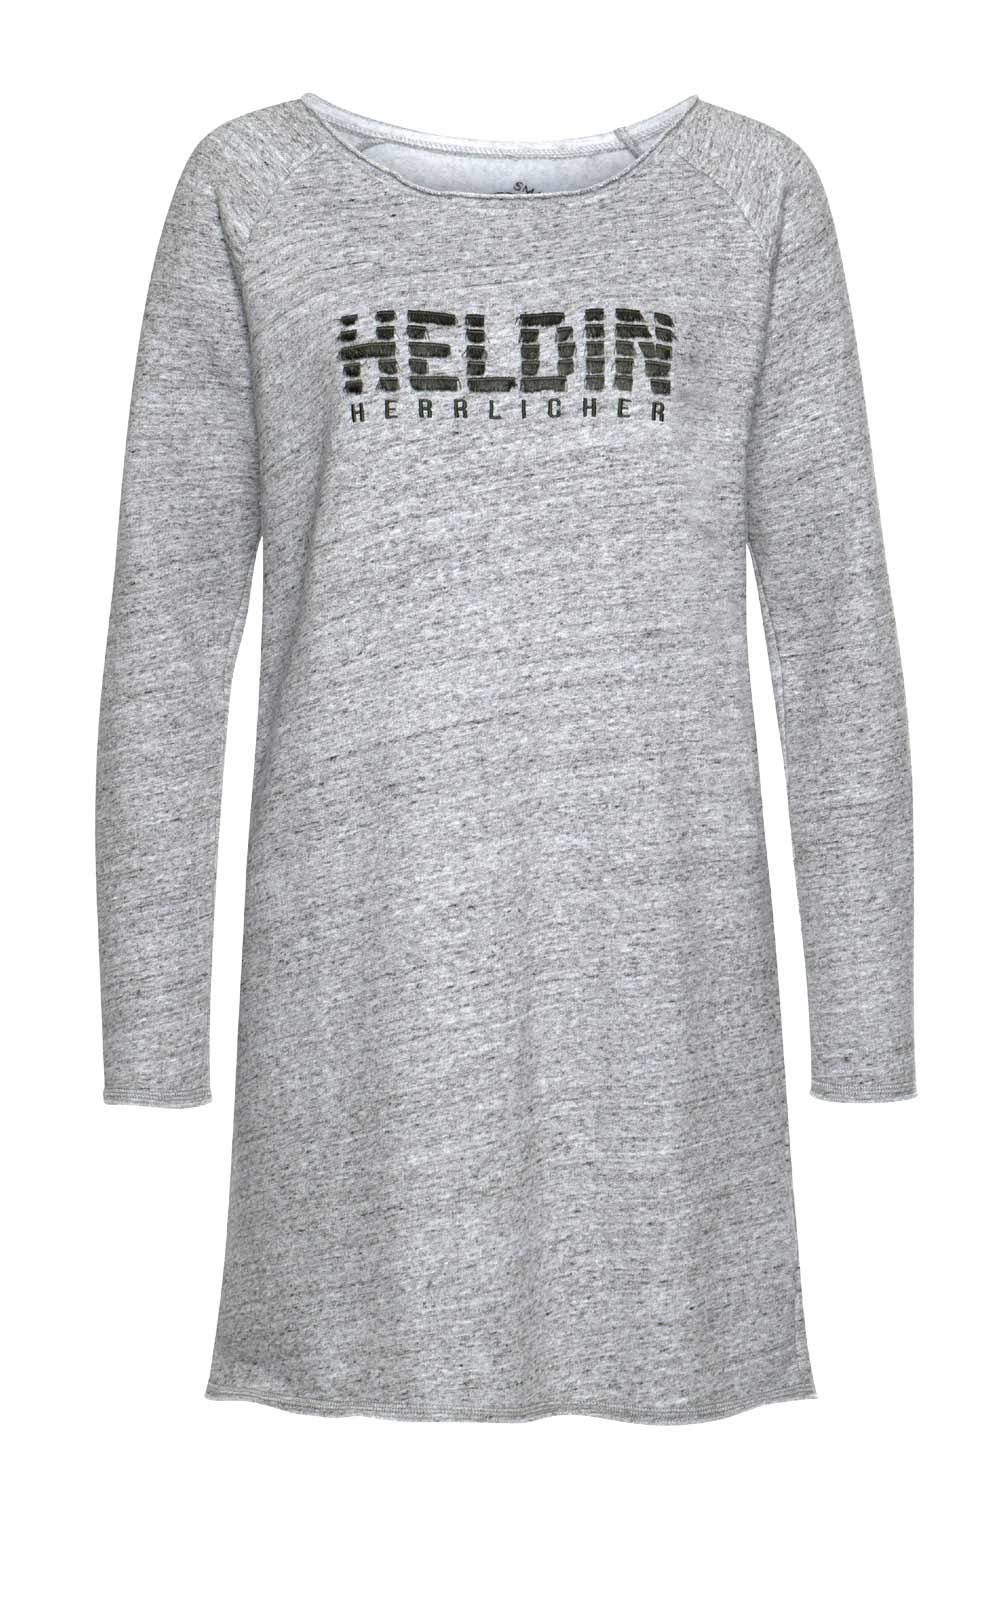 HERRLICHER grau-melange" Longshirt CARRA", Damen Herrlicher Marken-Sweat-Longshirt-Kleid